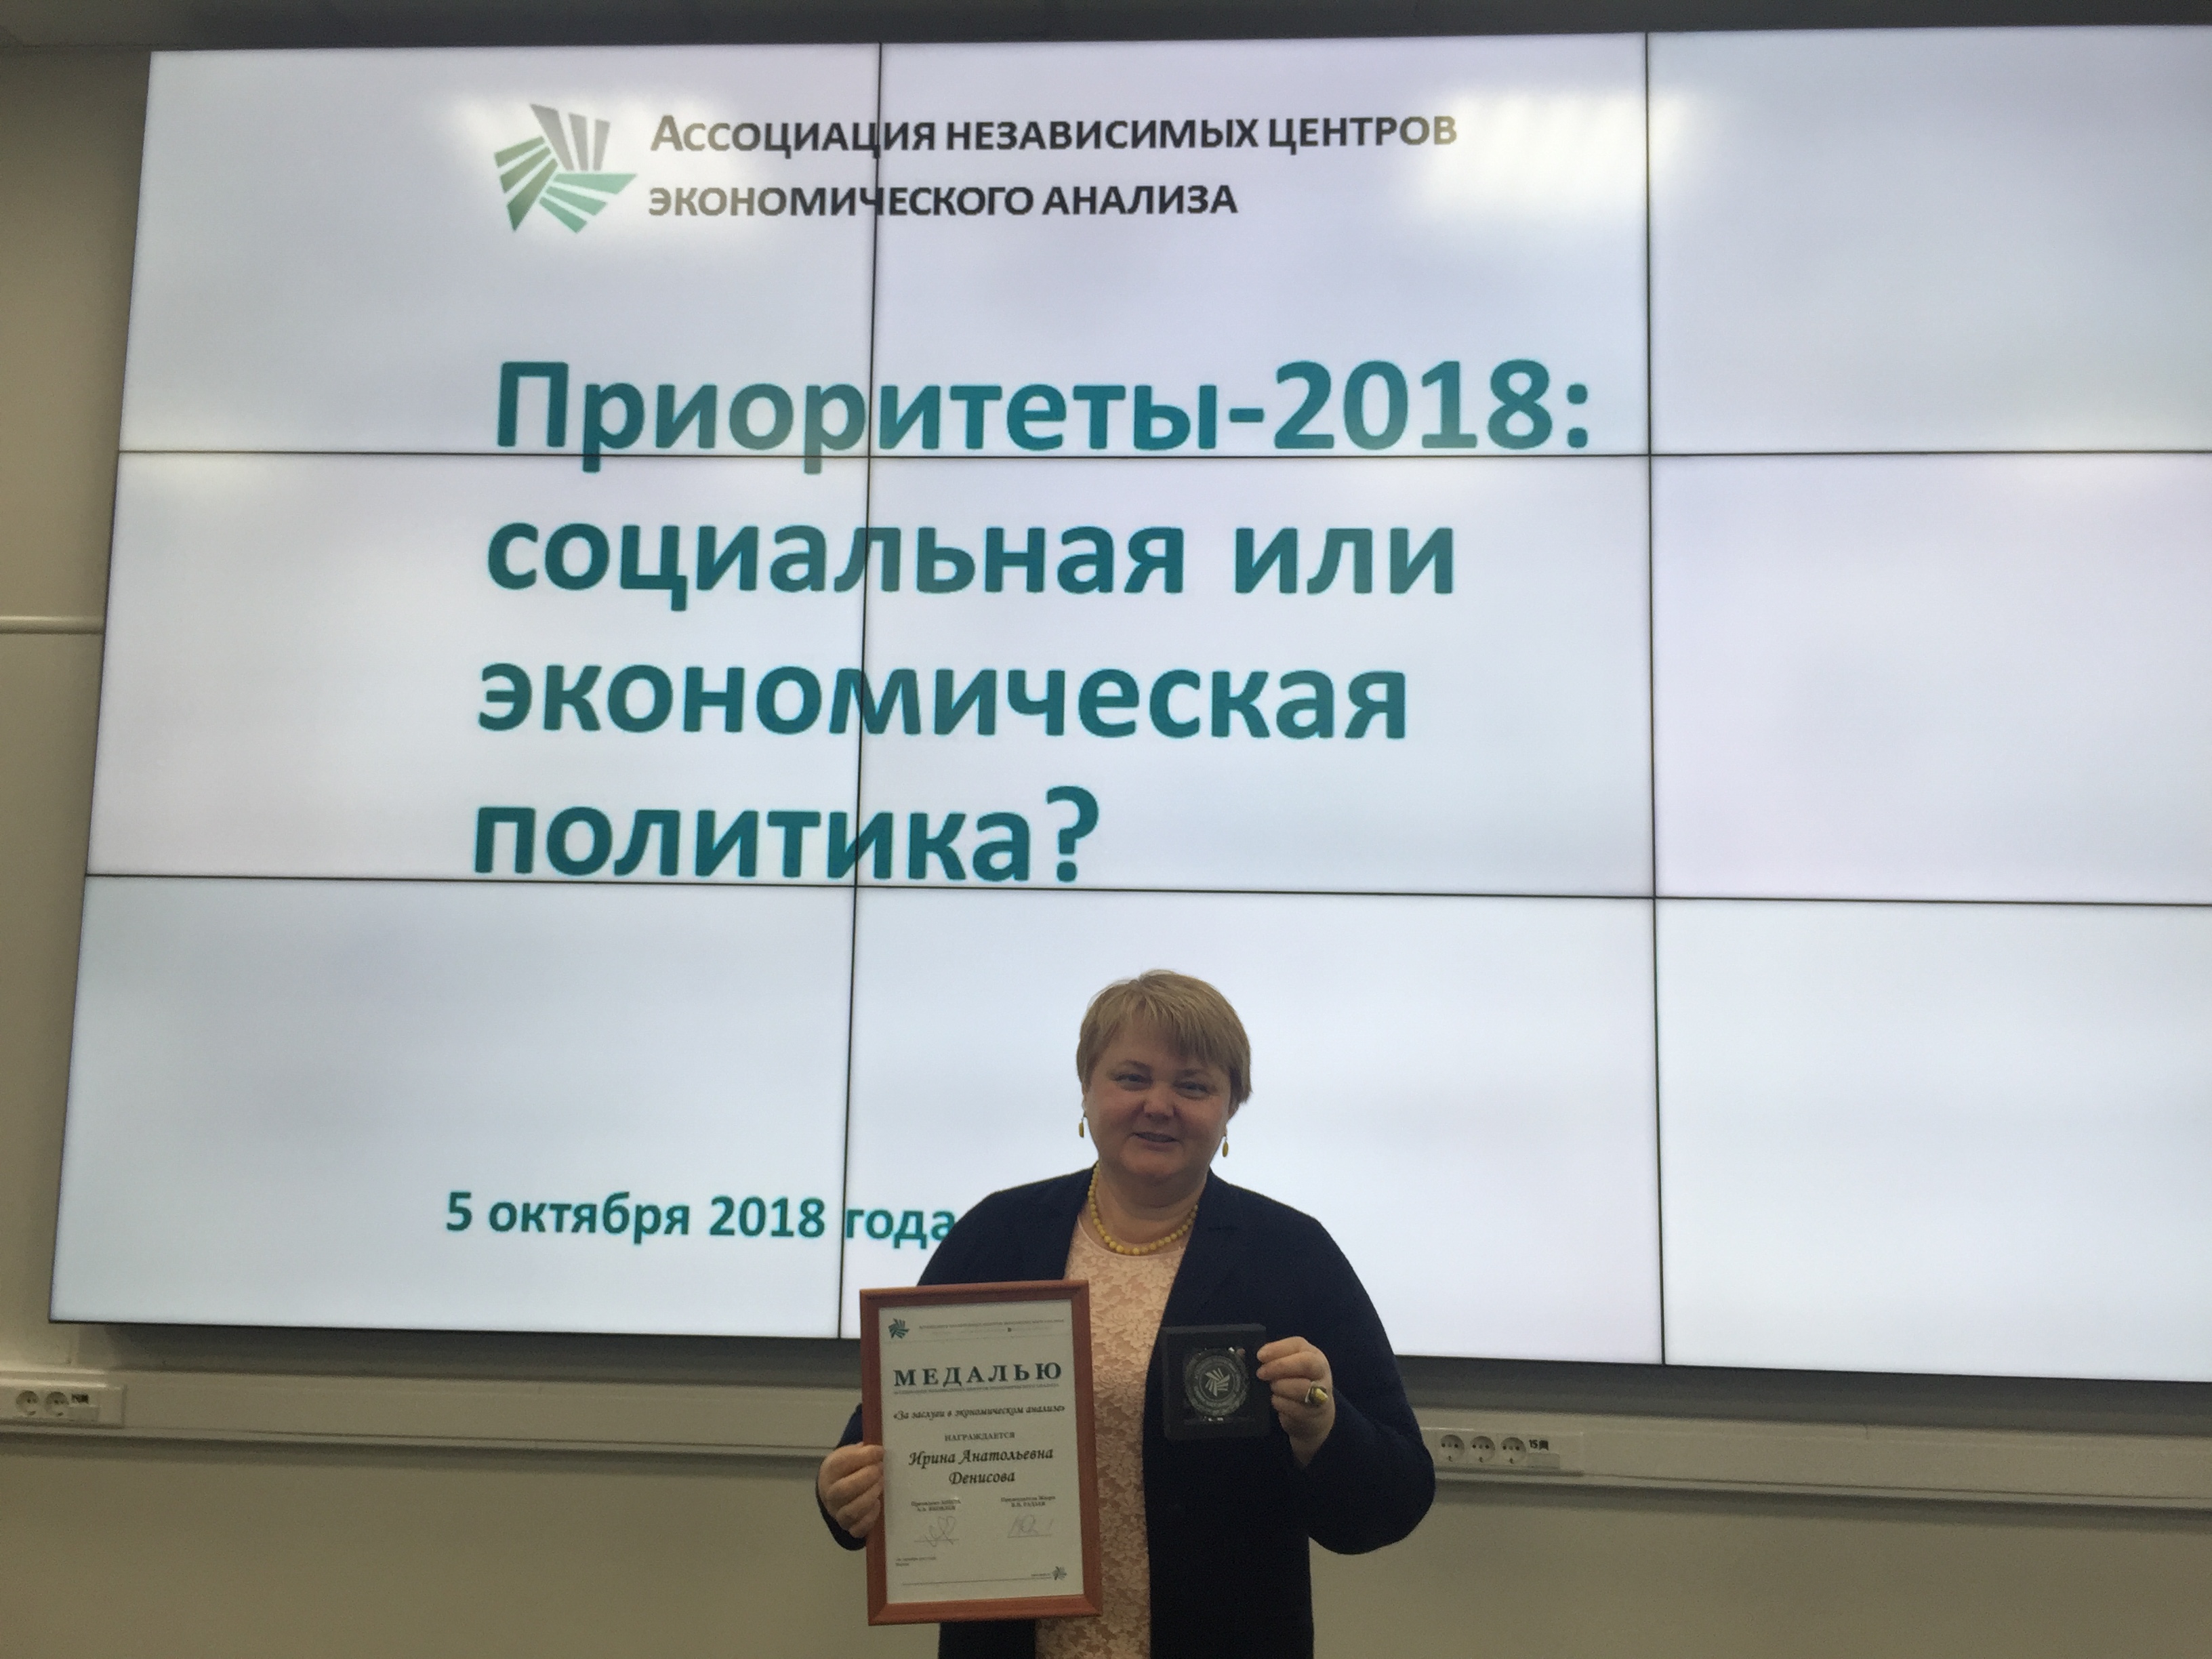 Денисова Ирина Анатольевна была награждена медалью АНЦЭА «За заслуги в экономическом анализе» за исследование о бедности, неравенстве и социальной политике